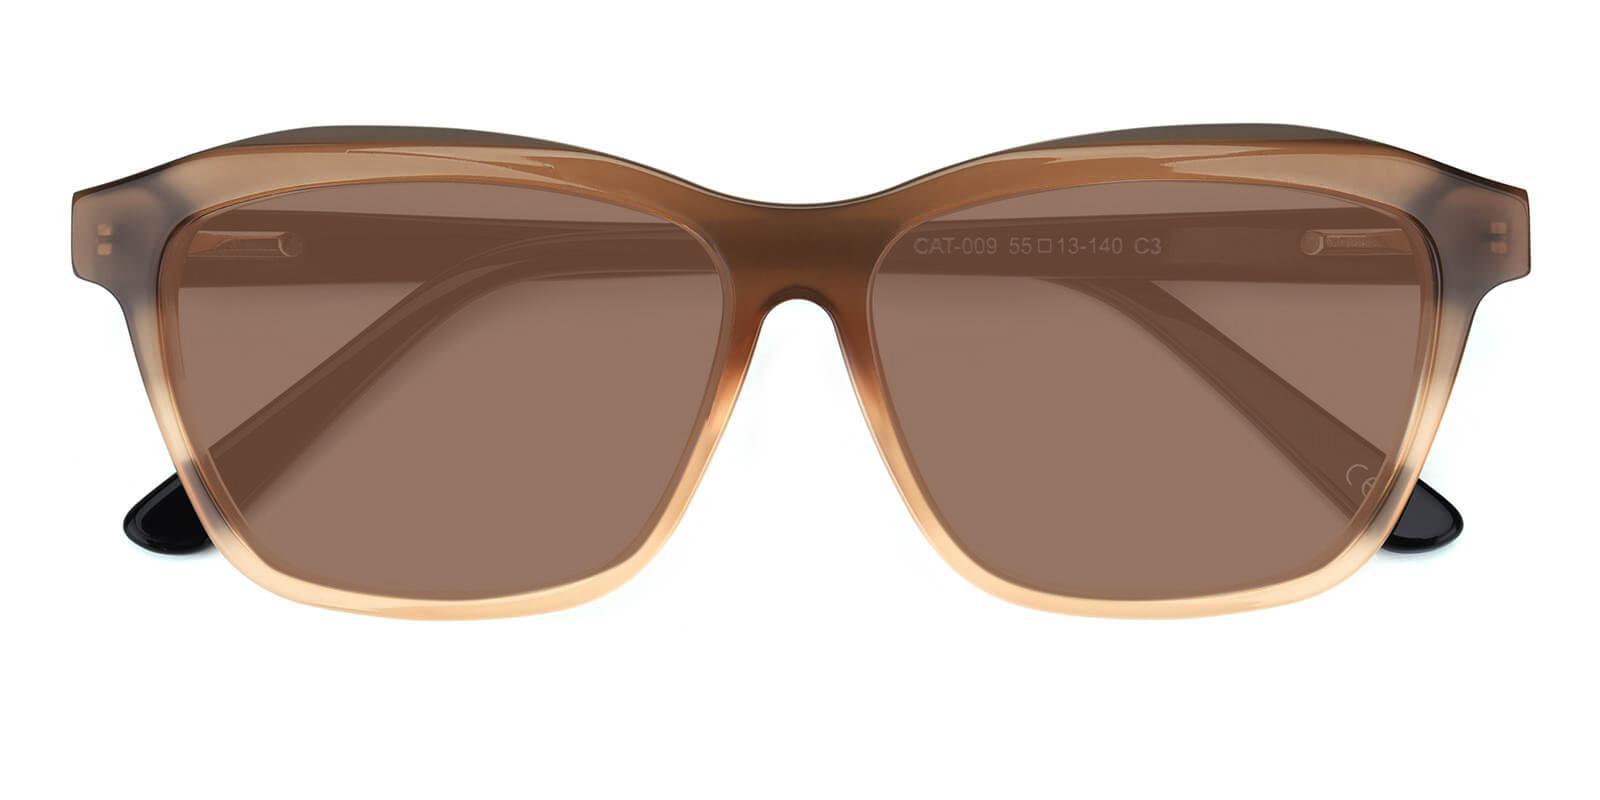 Morning Cream Acetate SpringHinges , Sunglasses , UniversalBridgeFit Frames from ABBE Glasses